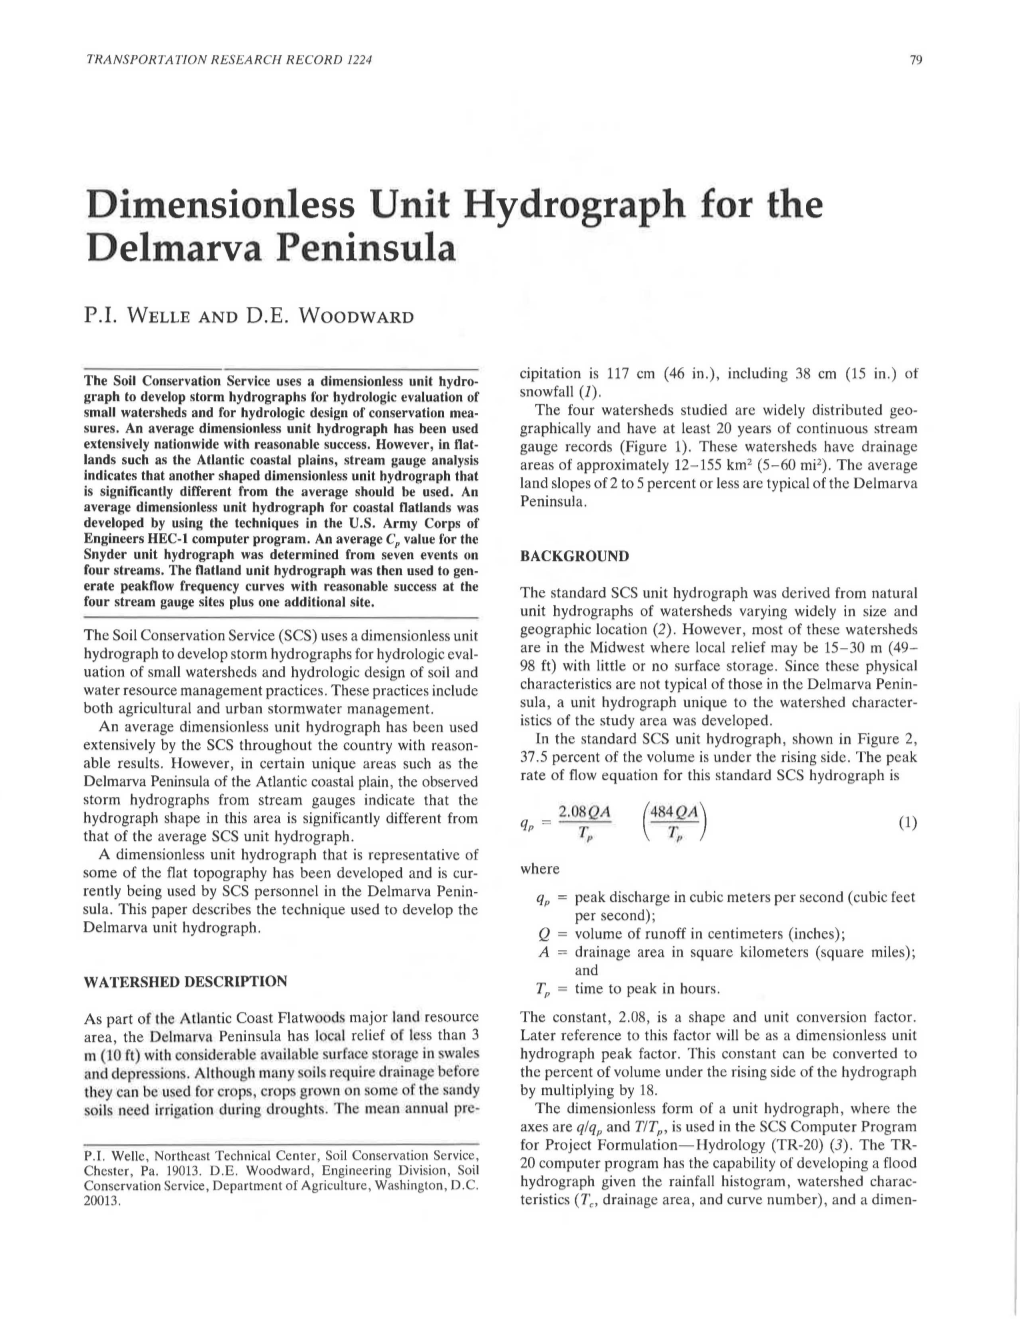 Dimensionless Unit Hydrograph for the Delmarva Peninsula